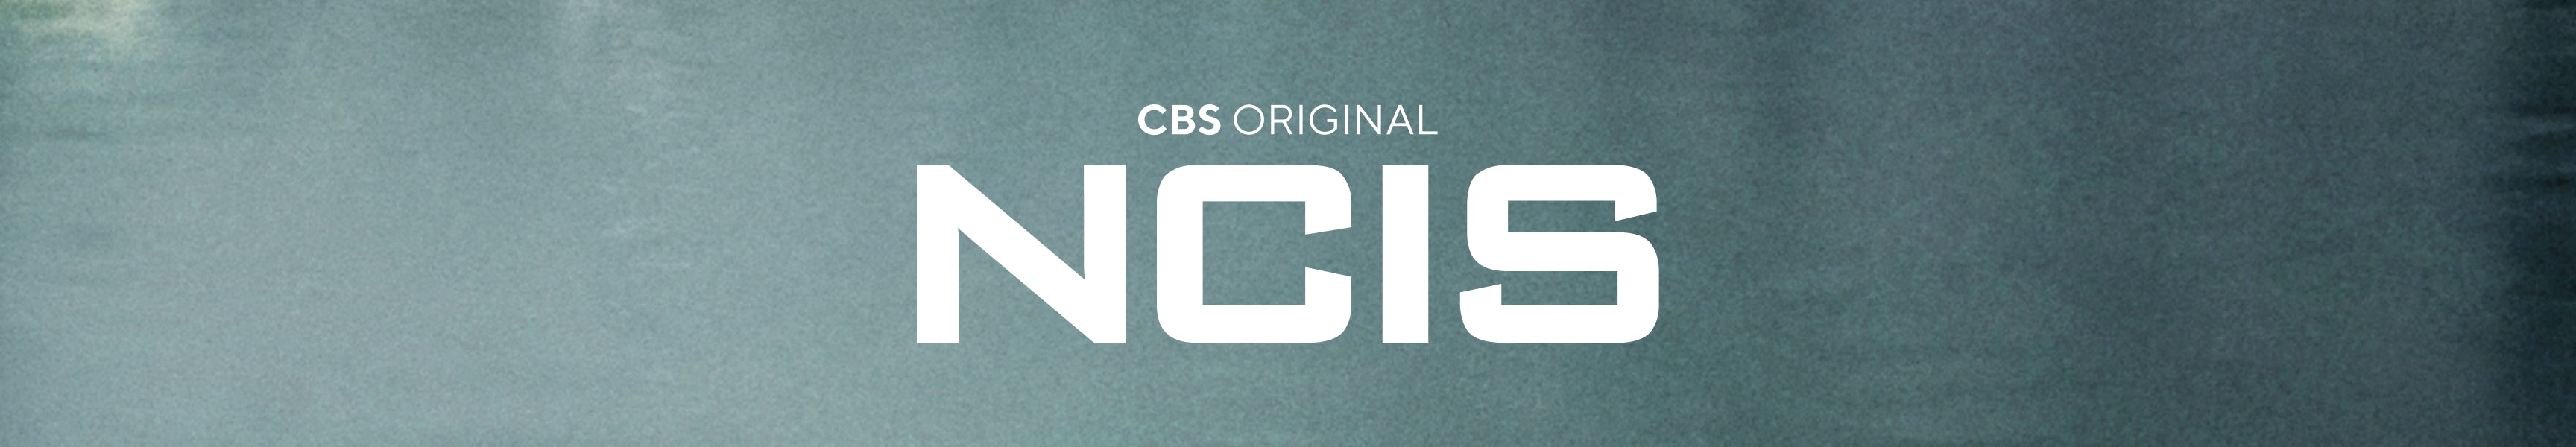 NCIS Logowear